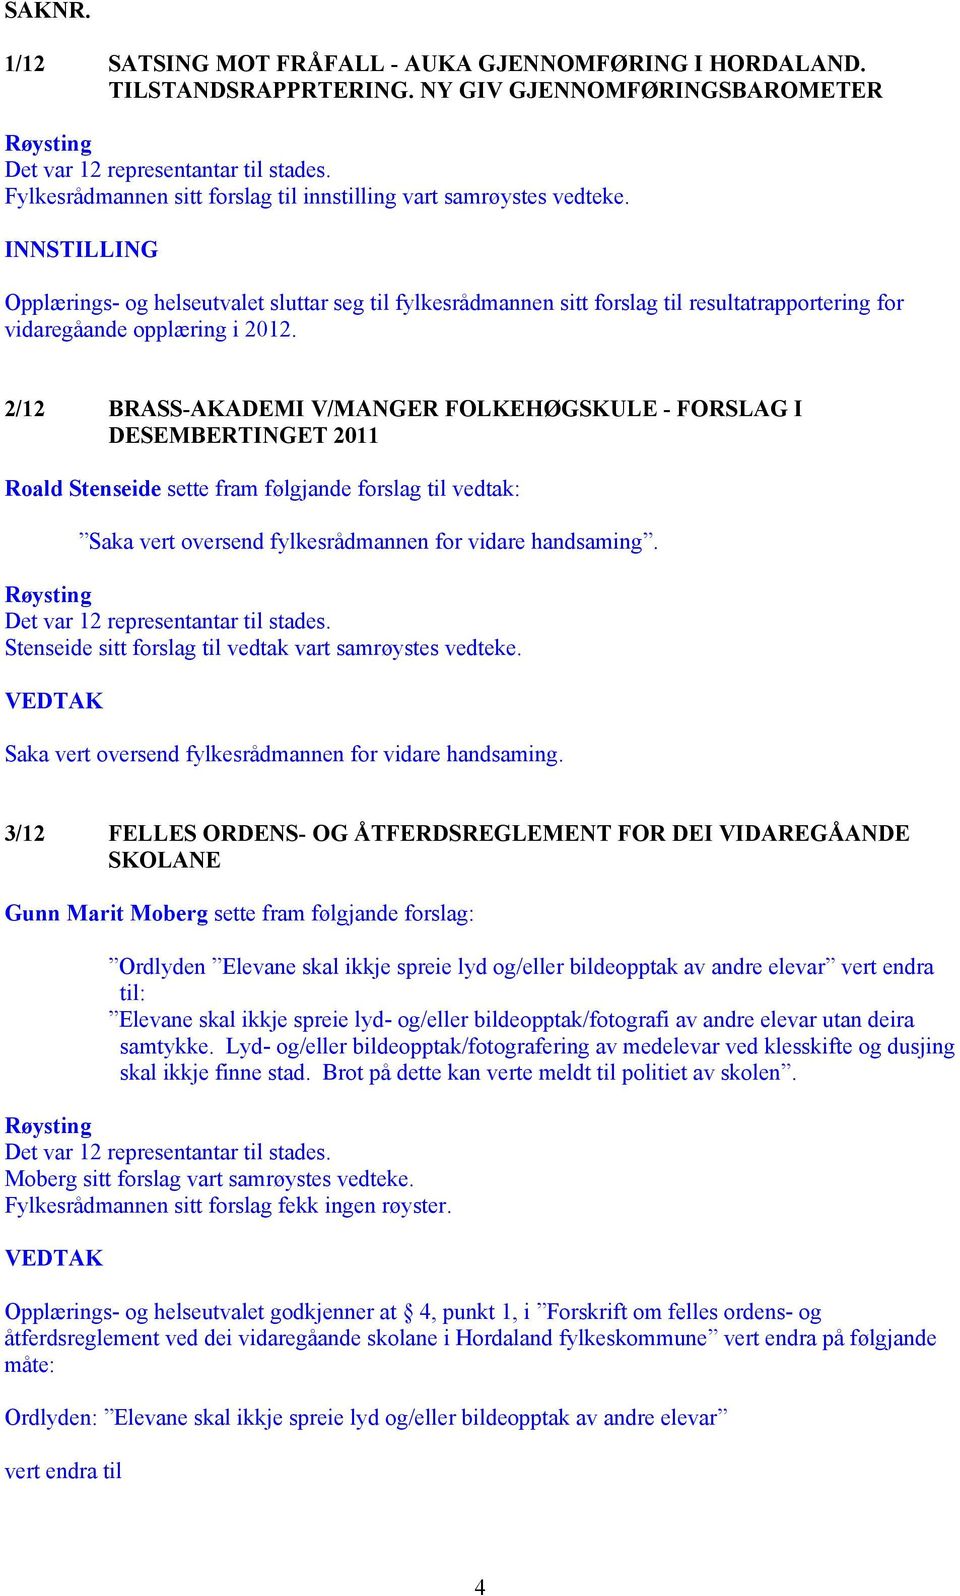 2/12 BRASS-AKADEMI V/MANGER FOLKEHØGSKULE - FORSLAG I DESEMBERTINGET 2011 Roald Stenseide sette fram følgjande forslag til vedtak: Saka vert oversend fylkesrådmannen for vidare handsaming.